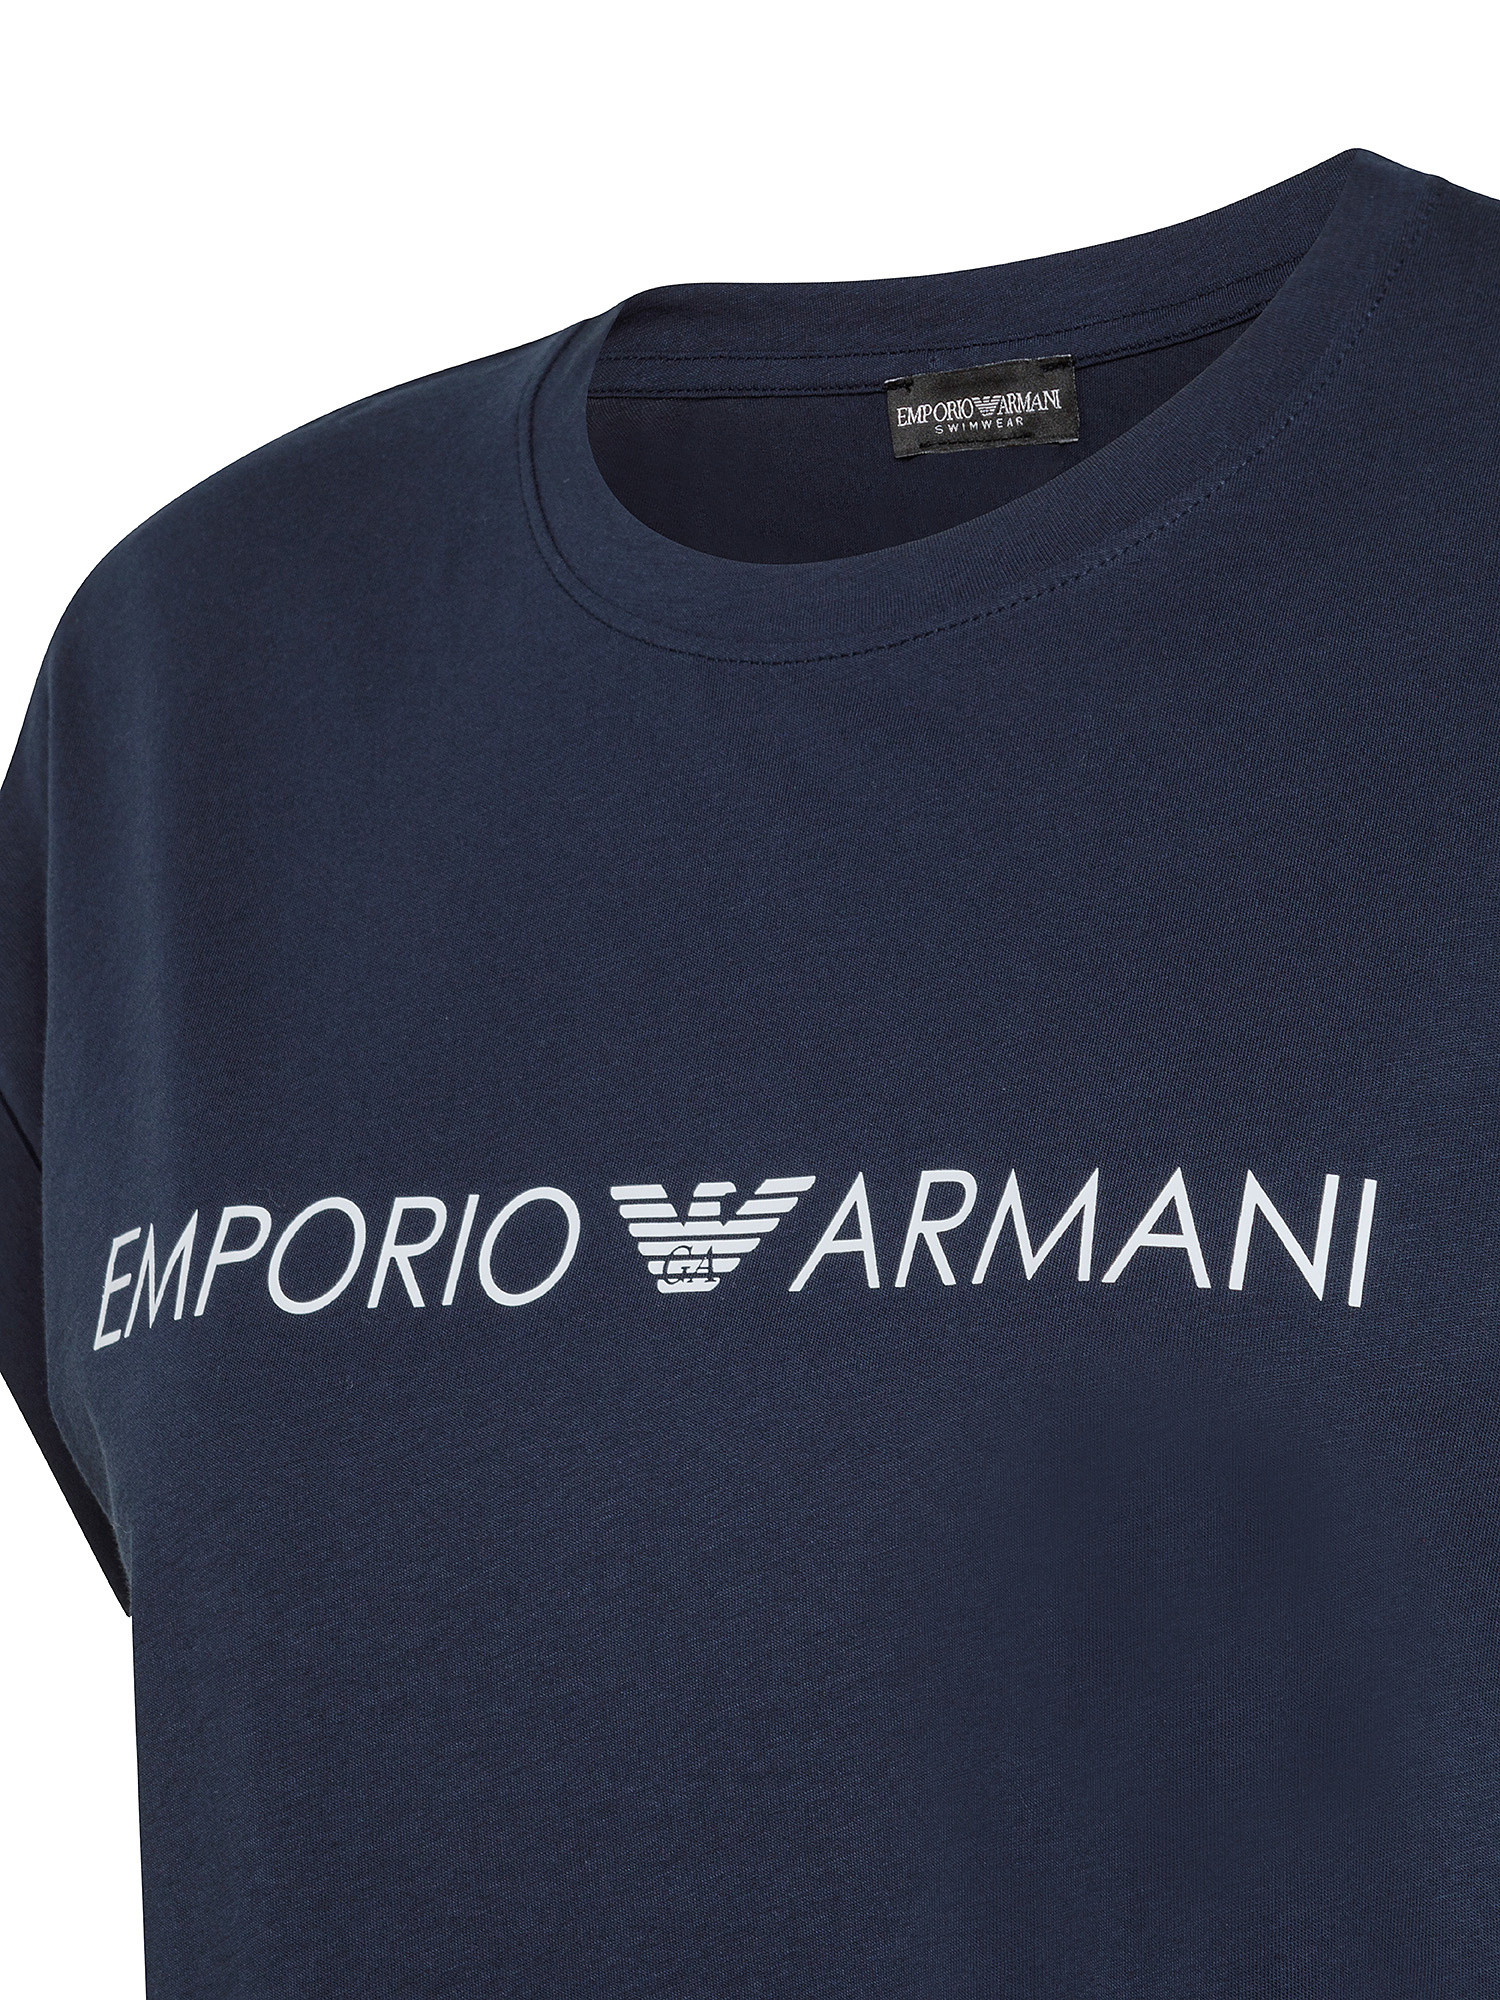 T- shirt con stampa logo, Blu, large image number 2